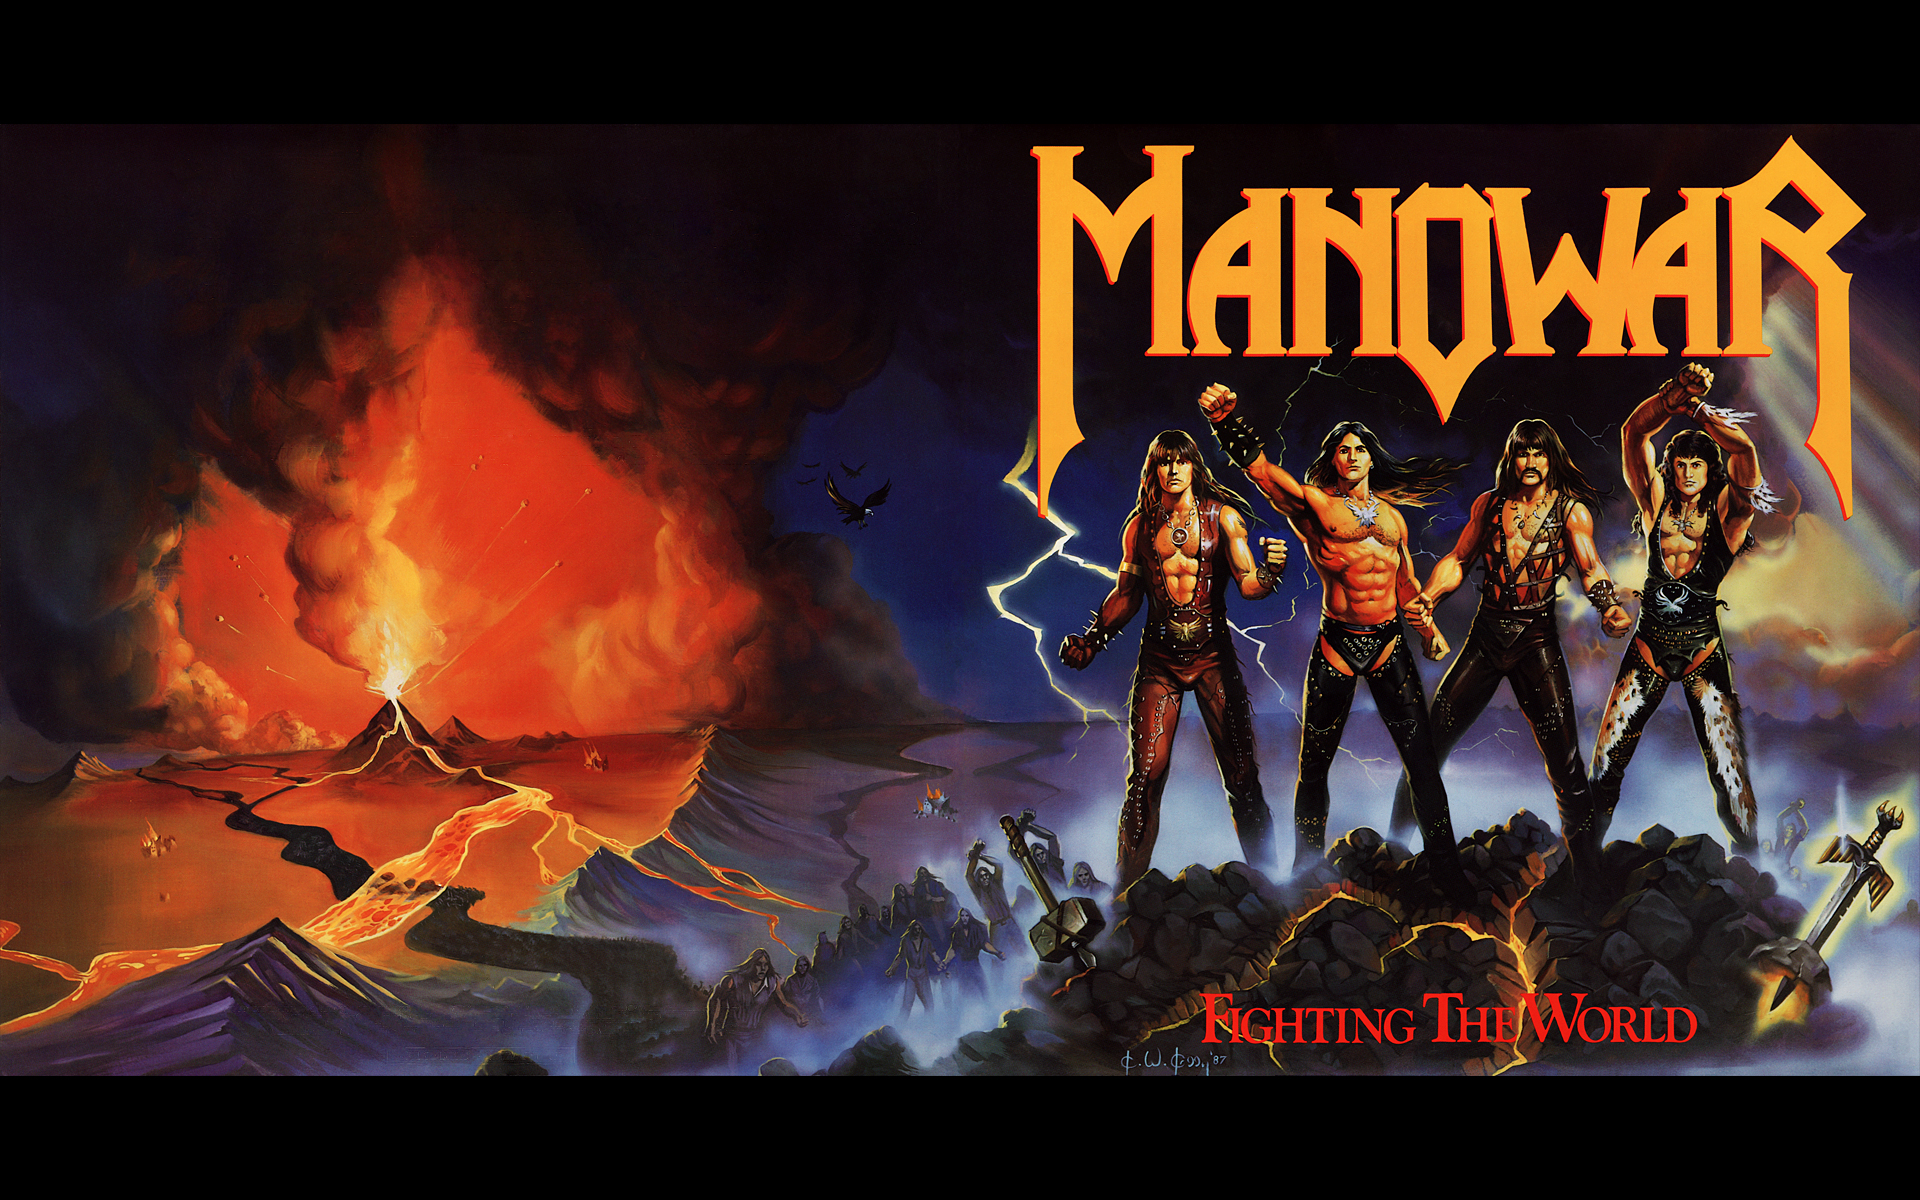 manowar wallpaper,juego de acción y aventura,película,juego de pc,póster,cg artwork